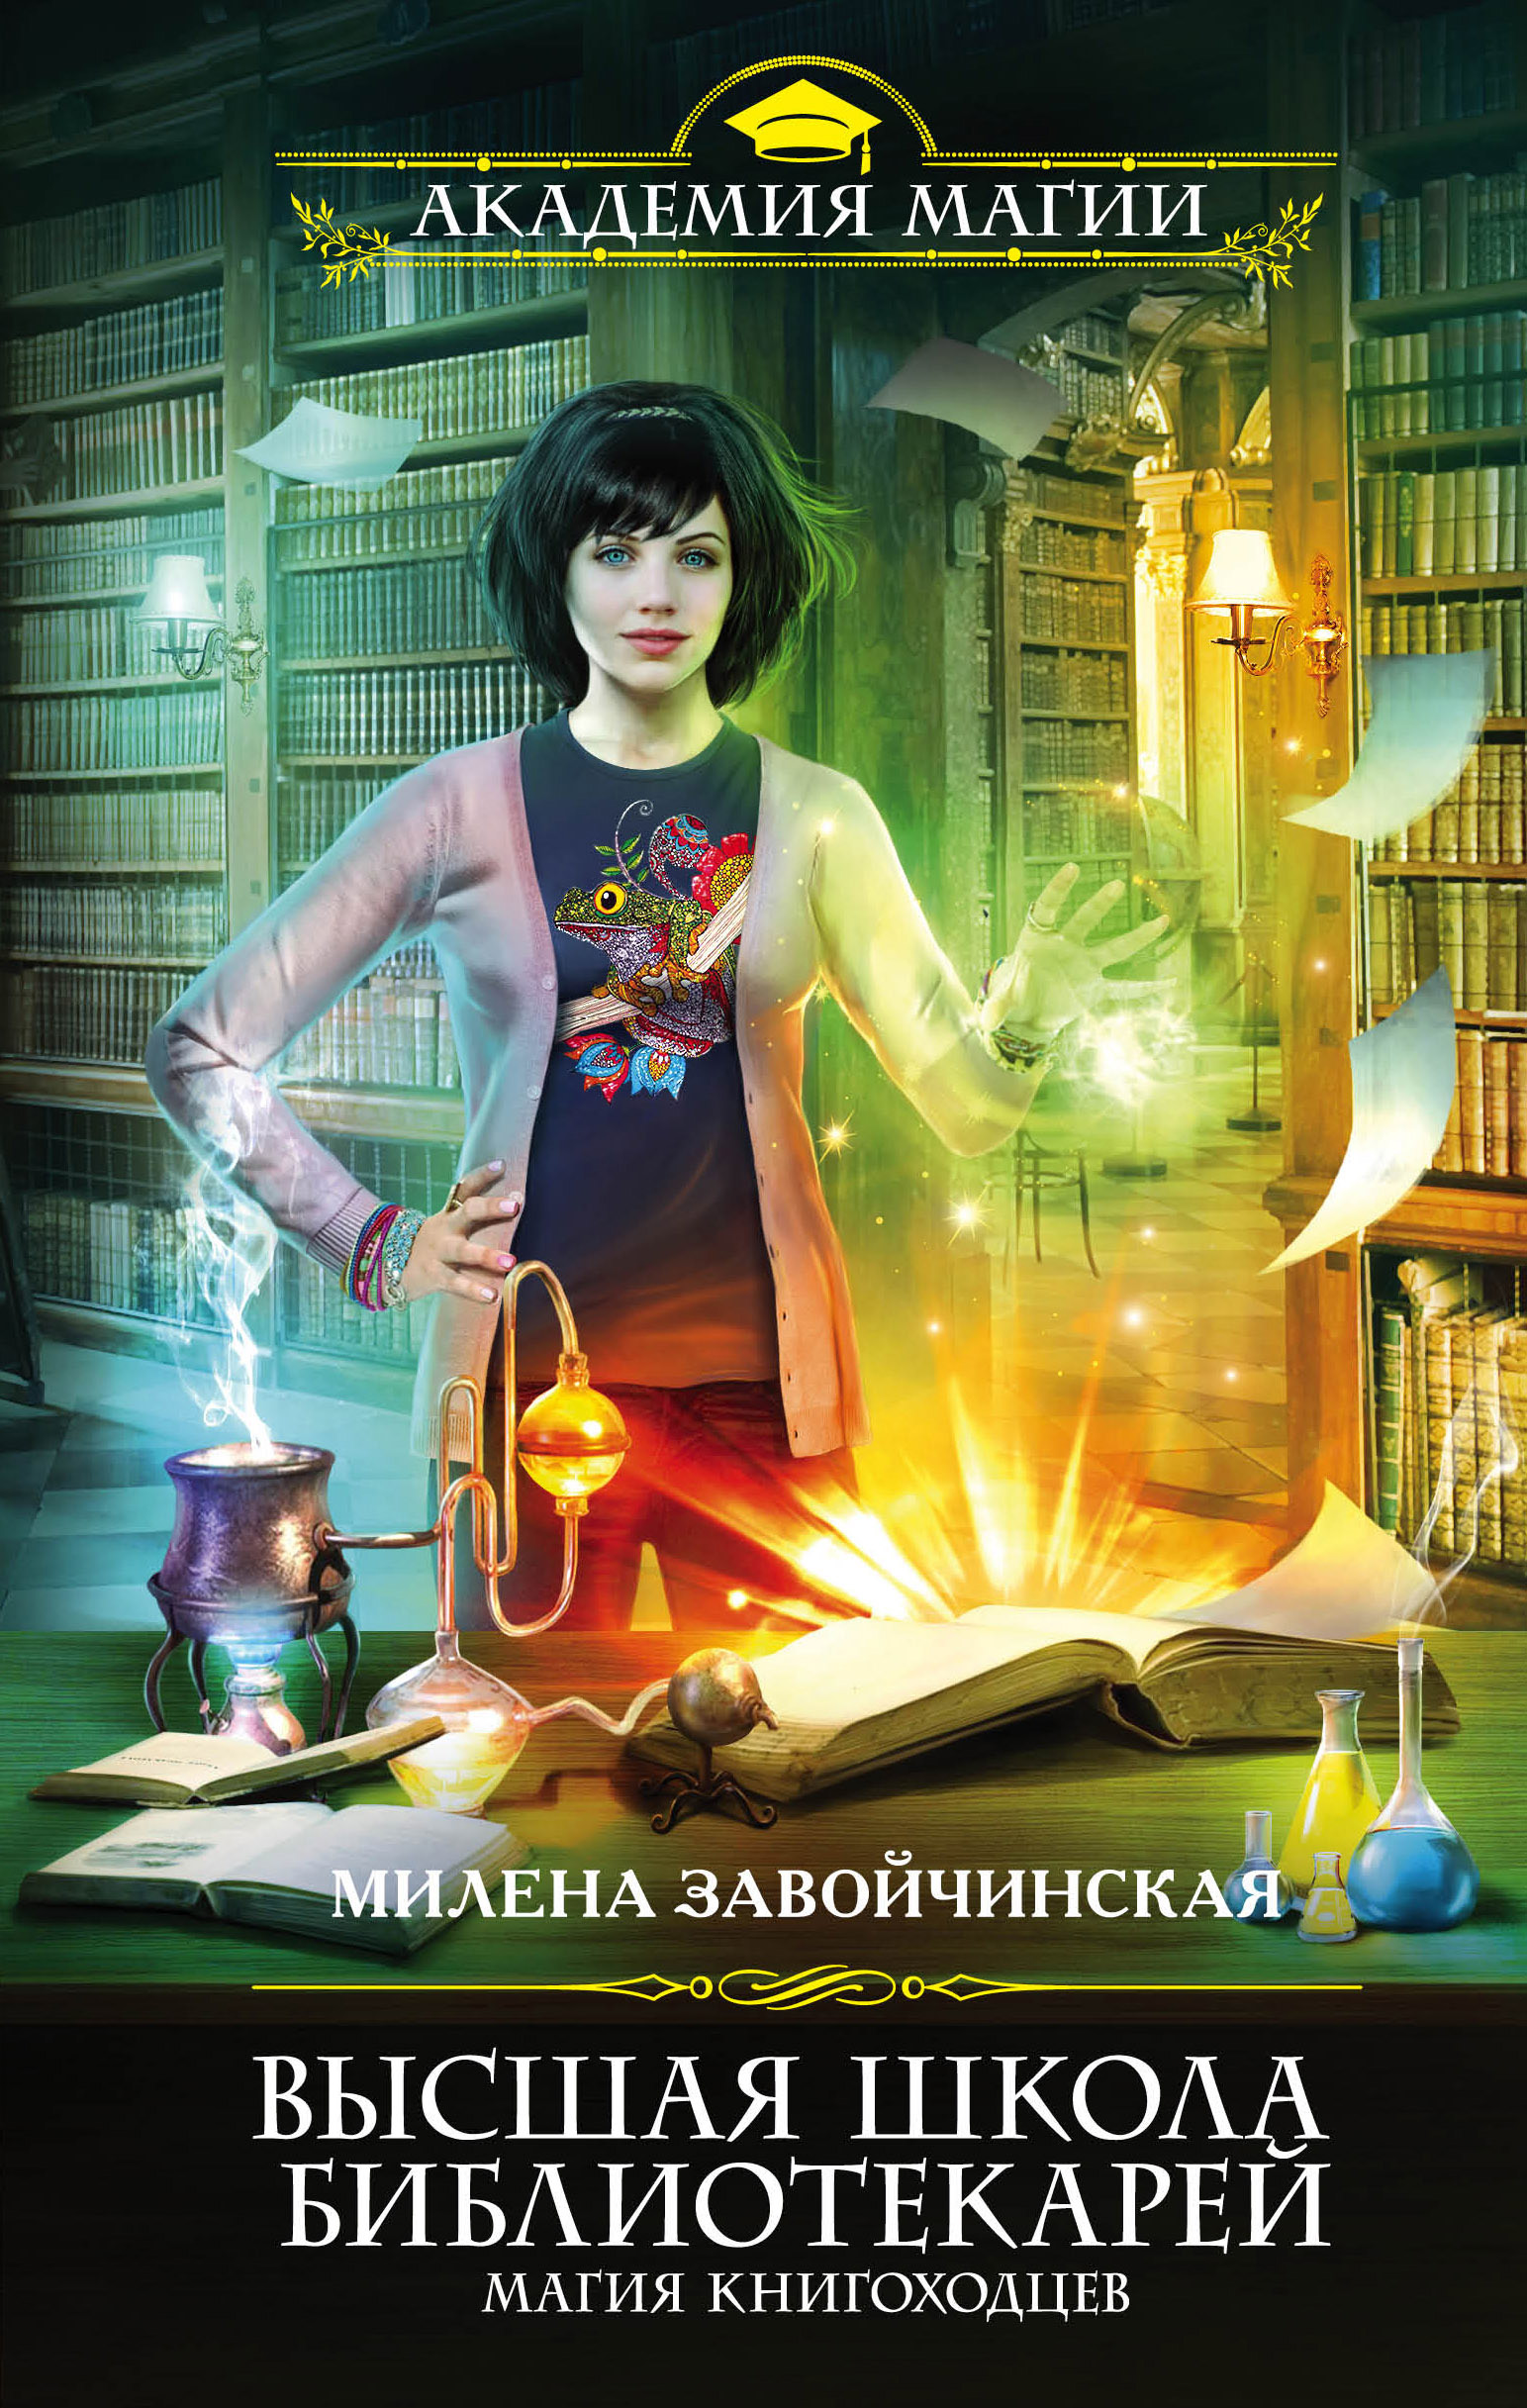 Высшая Школа Библиотекарей. Магия книгоходцев читать онлайн